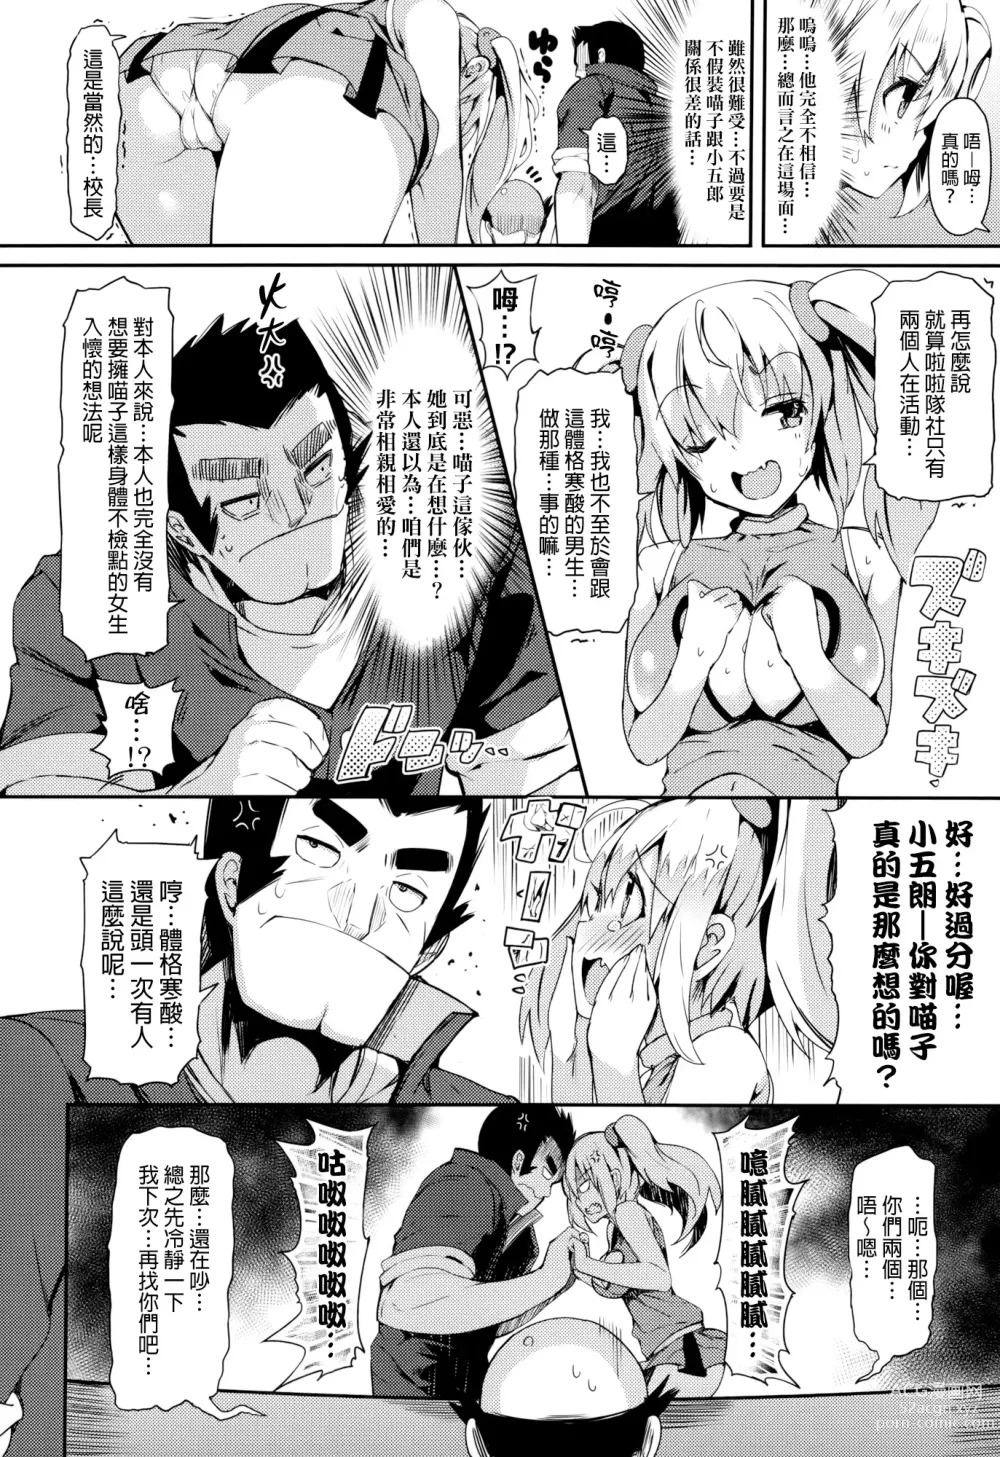 Page 11 of manga 恋乳ているず+とらのあな限定小冊子+イラストカード